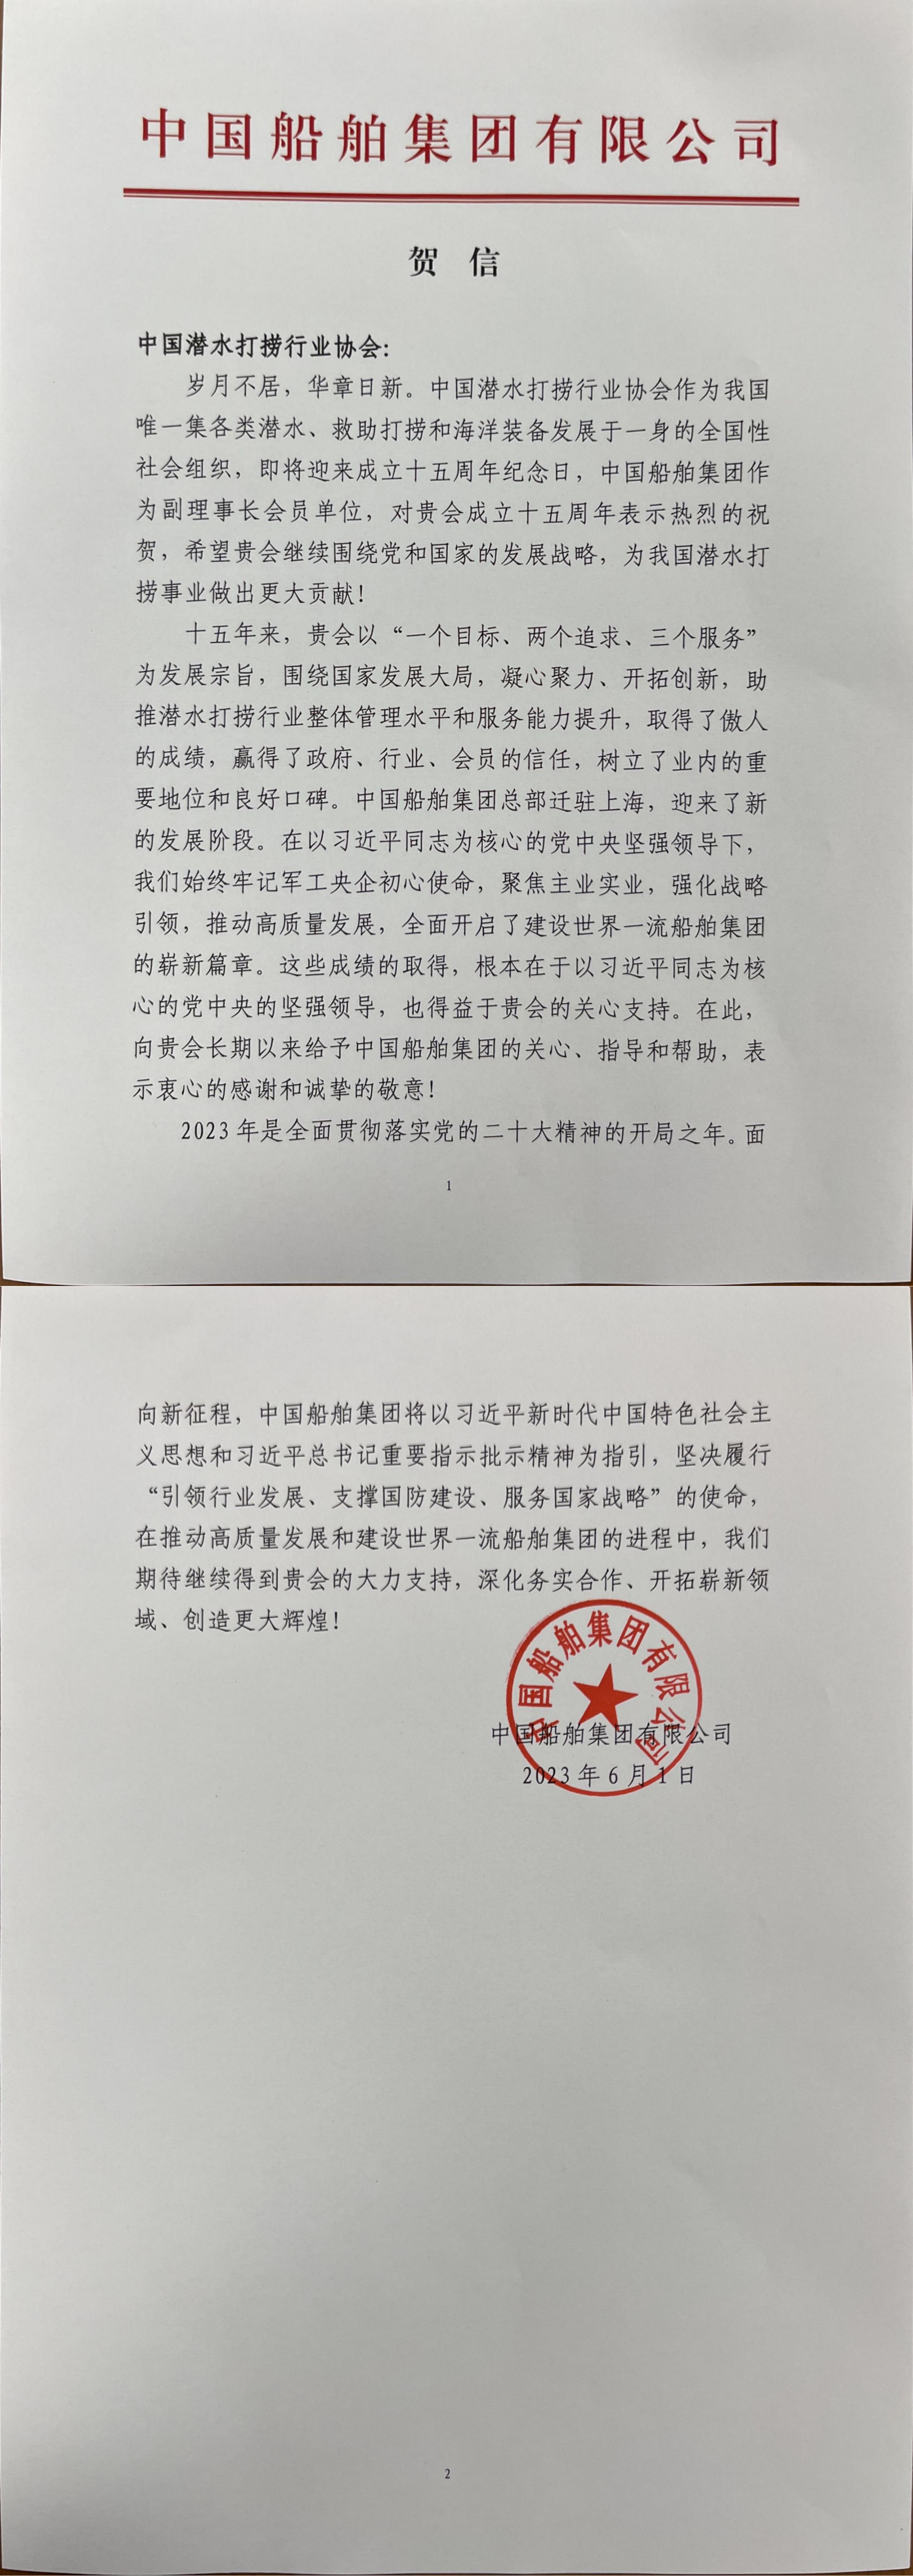 中国船舶集团来信祝贺协会成立十五周年_00.jpg